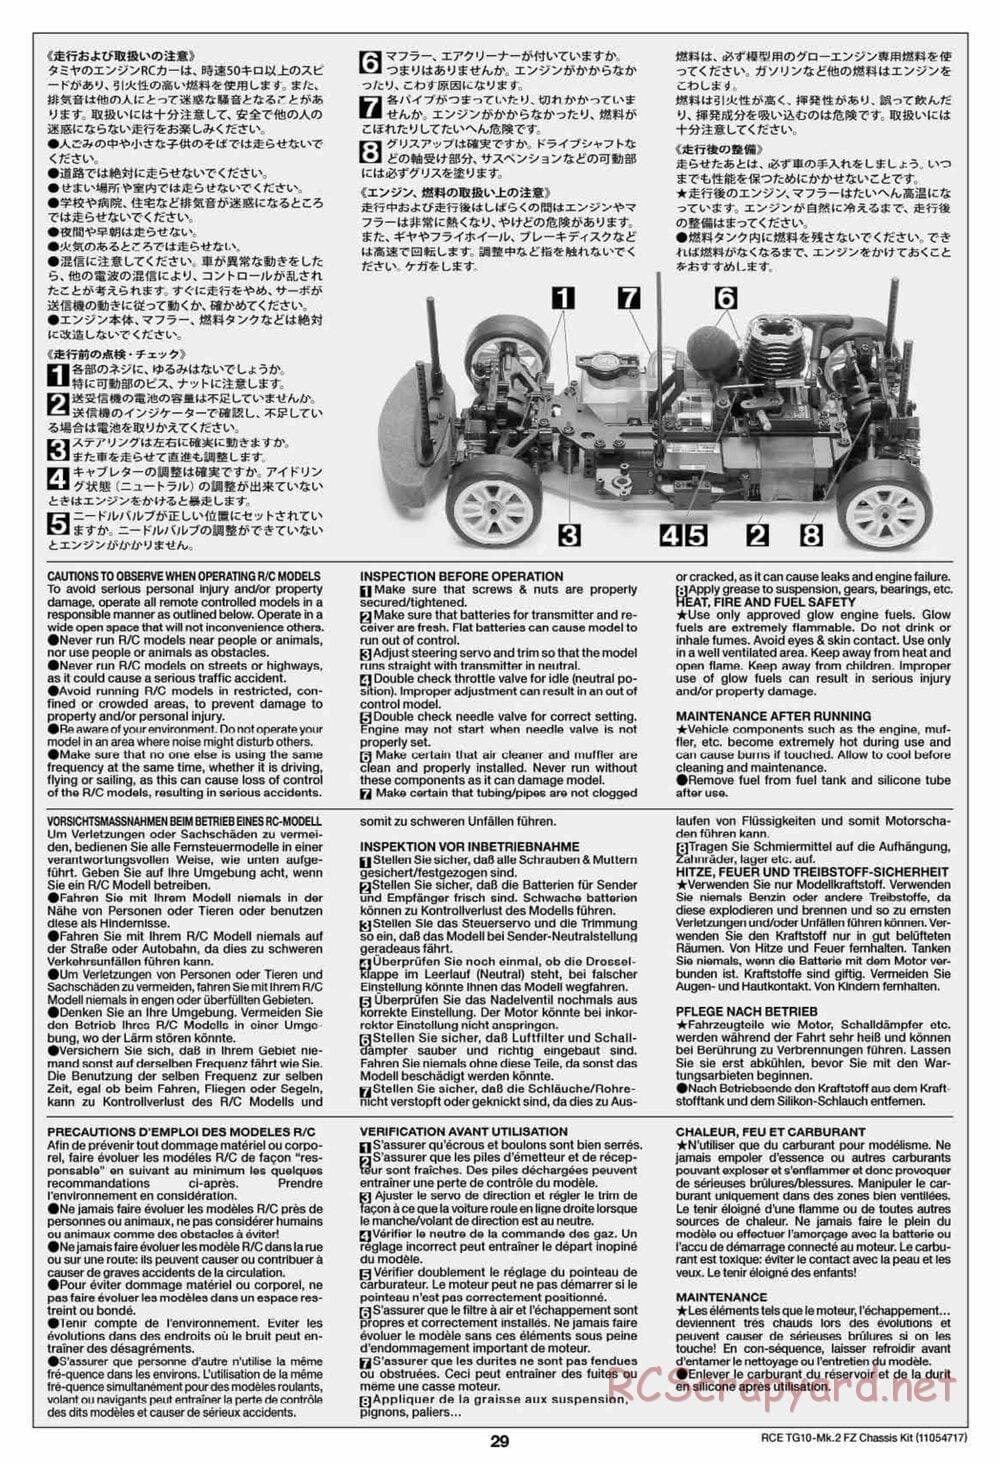 Tamiya - TG10 Mk.2 FZ Chassis - Manual - Page 29